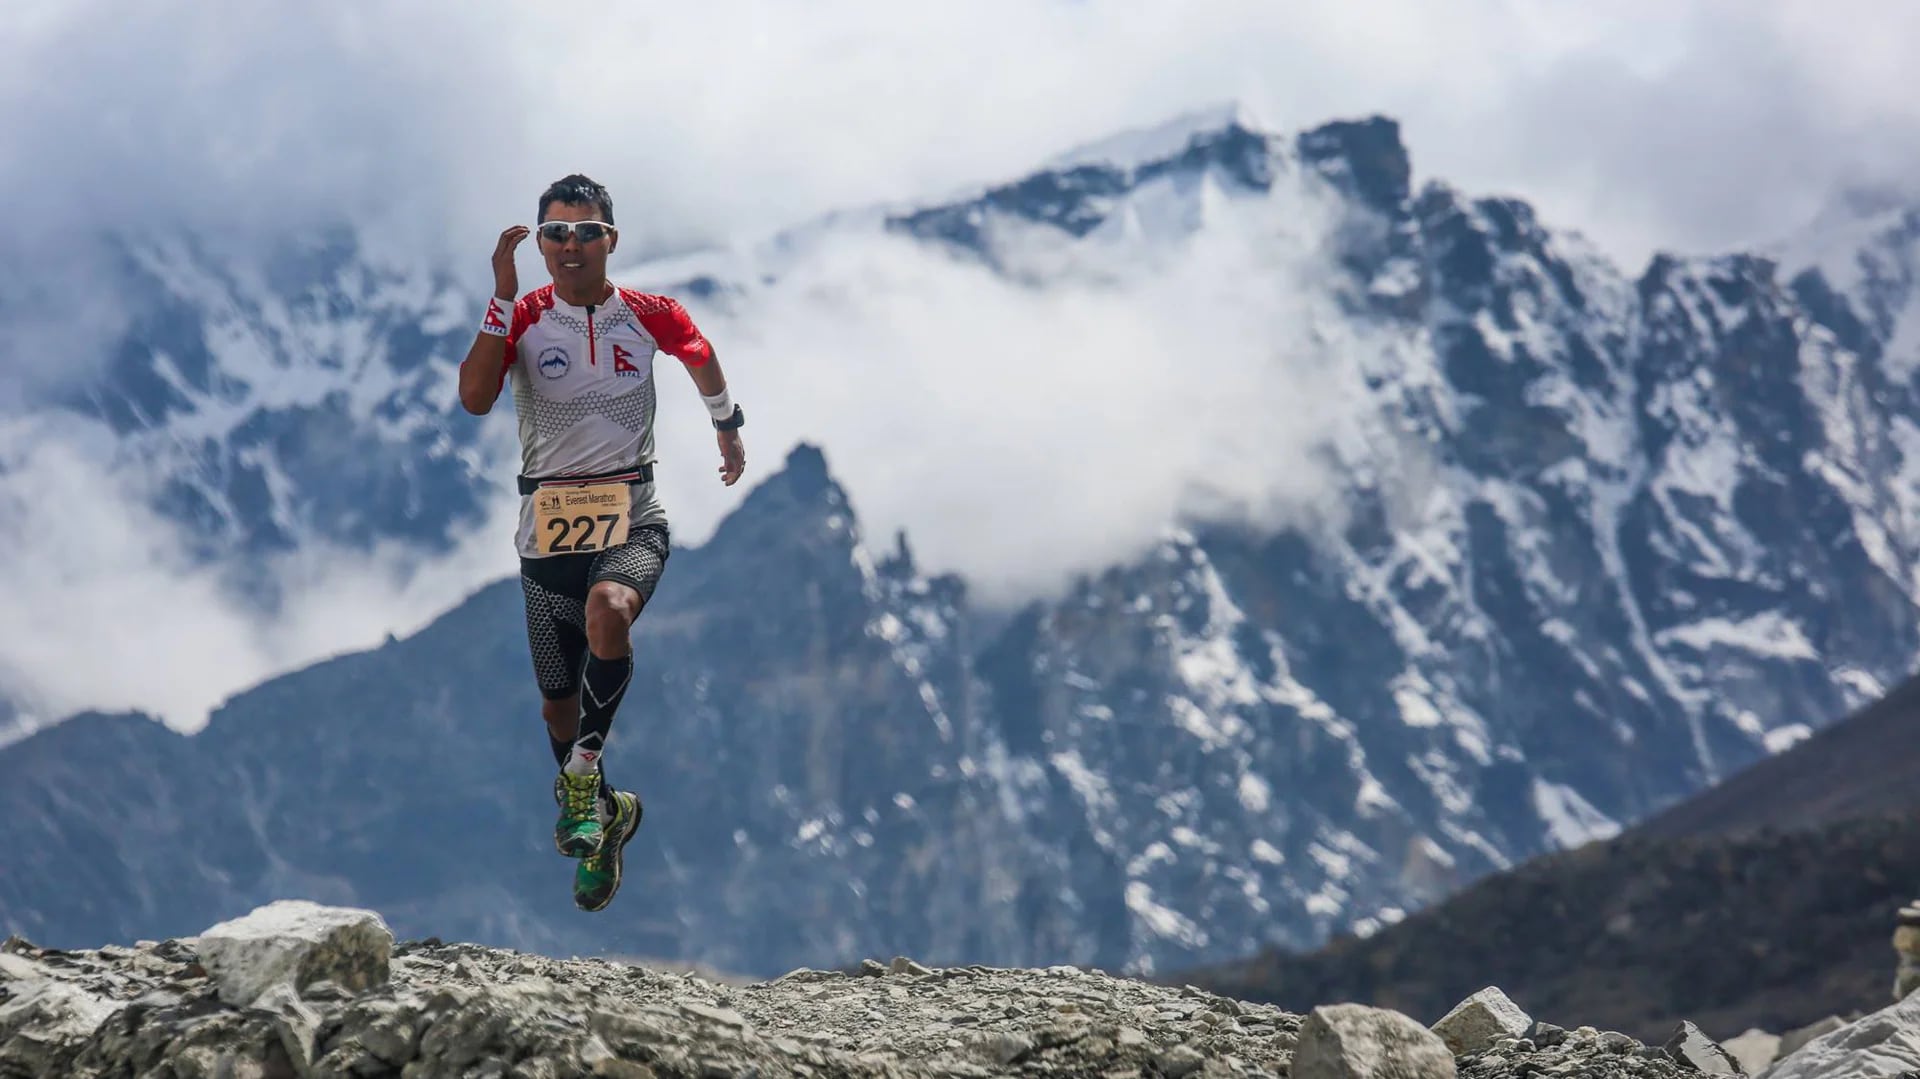 En las montañas de Nepal se realiza una de las carreras más extremas (Anuj Adhikary/Everest Marathon Facebook)